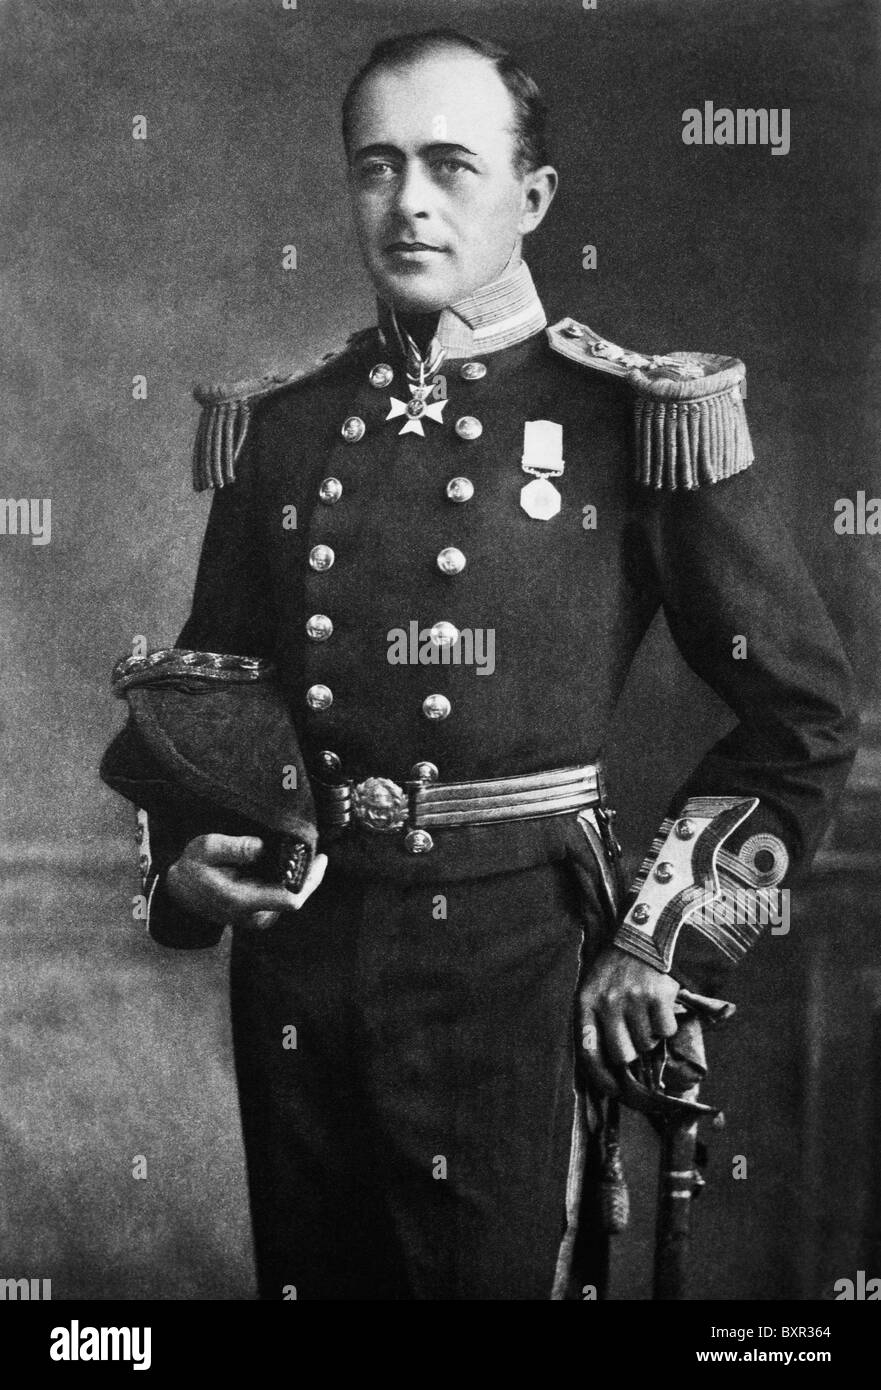 Vintage retrato fotográfico oficial de la Marina Real Británica y explorador polar Capitán Robert Falcon Scott (1868 - 1912). Foto de stock